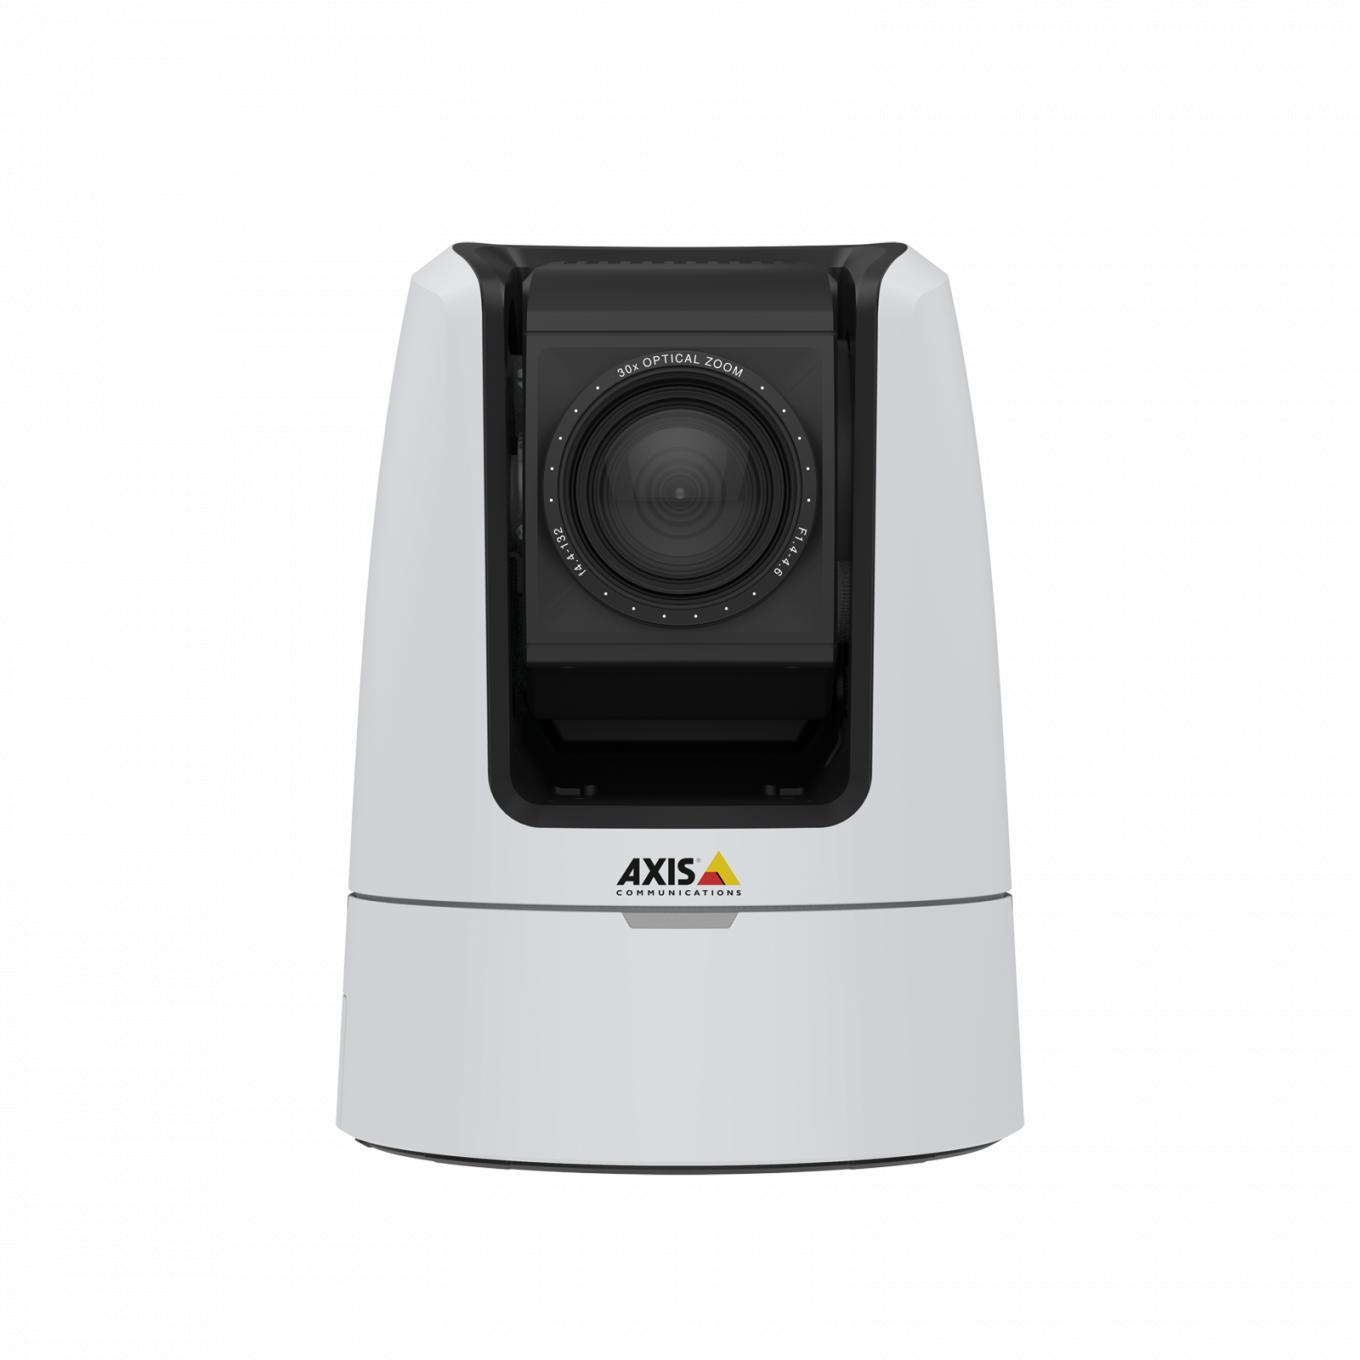 AXIS V5925 PTZ Network Camera offre audio di qualità da studio con input XLR